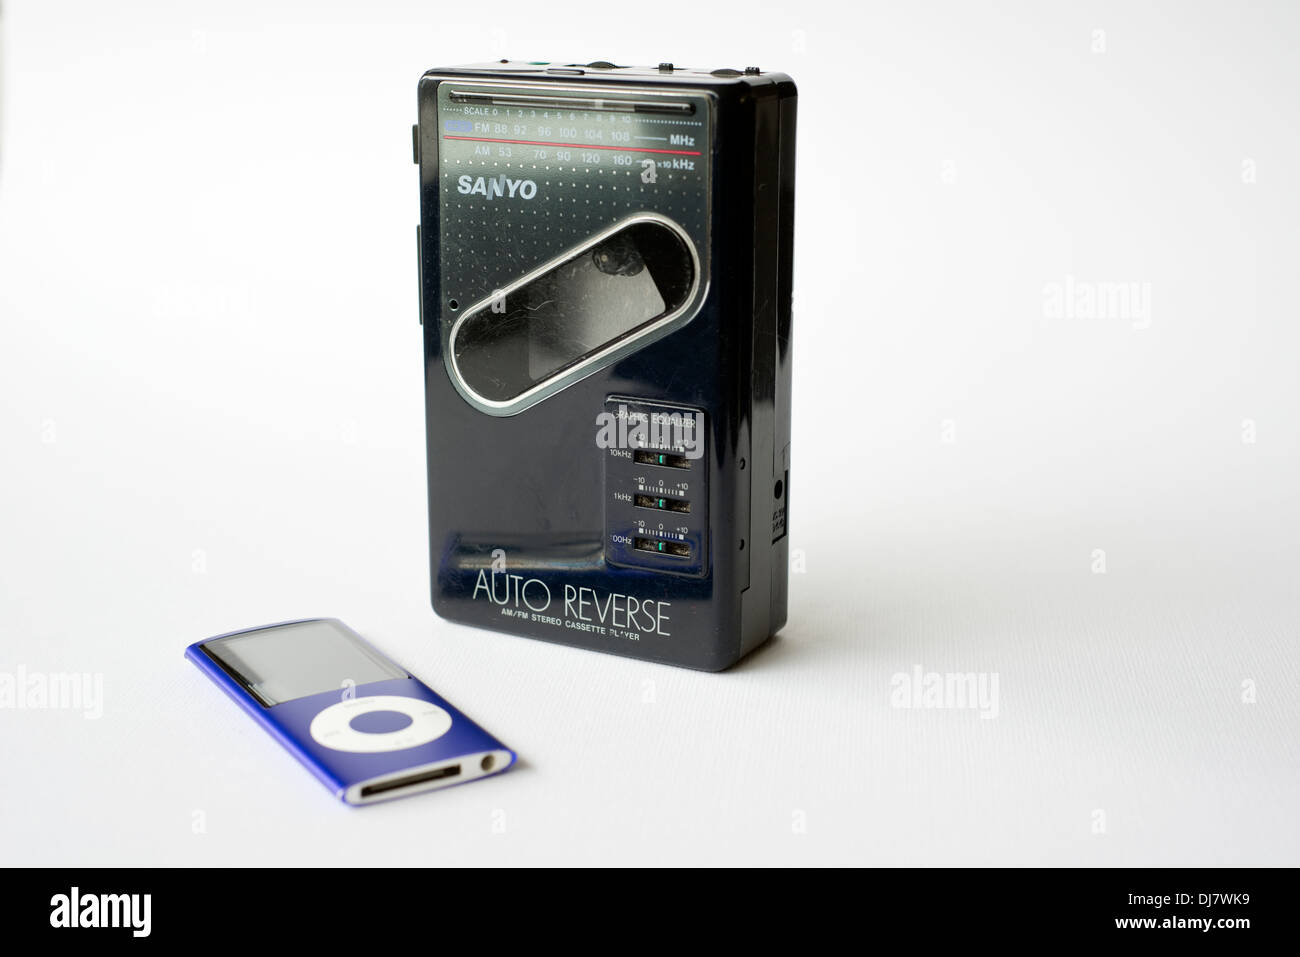 Un viejo Sanyo Walkman reproductor de casete personal incluyendo radio, junto a un moderno Apple iPod Nano Foto de stock